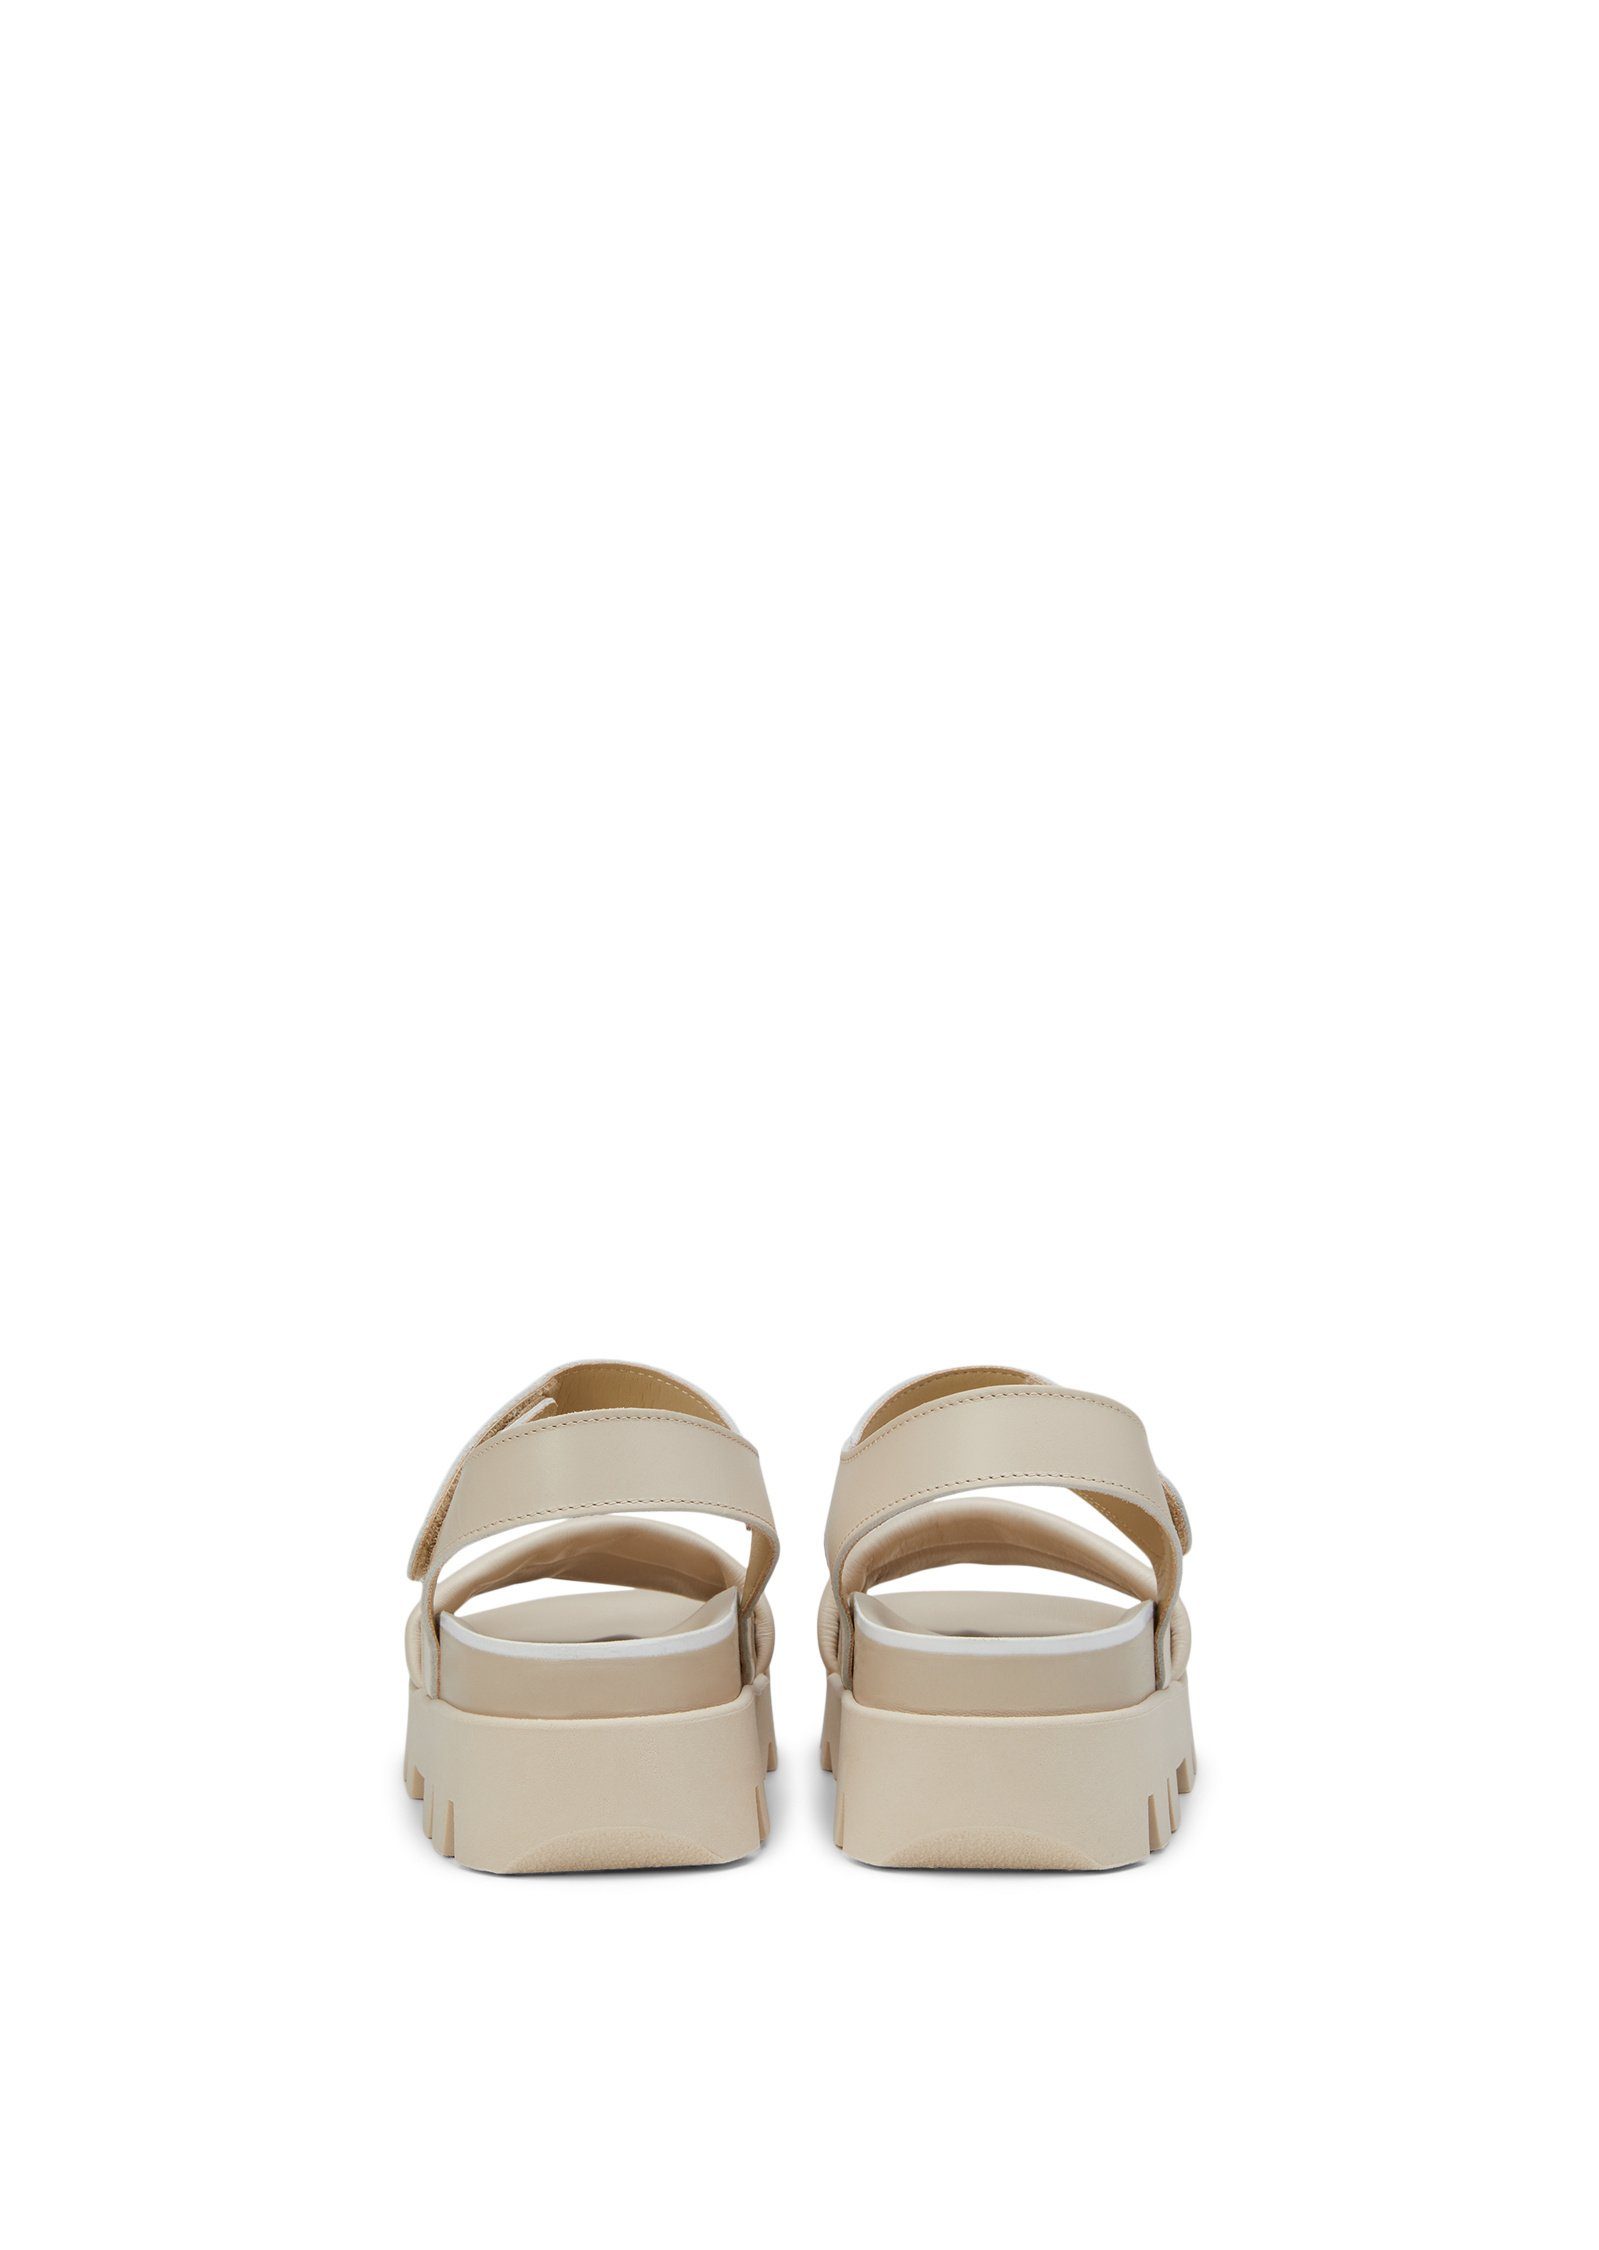 Fußbett O'Polo Marc ergonomisch mit Sandale beige geformtem